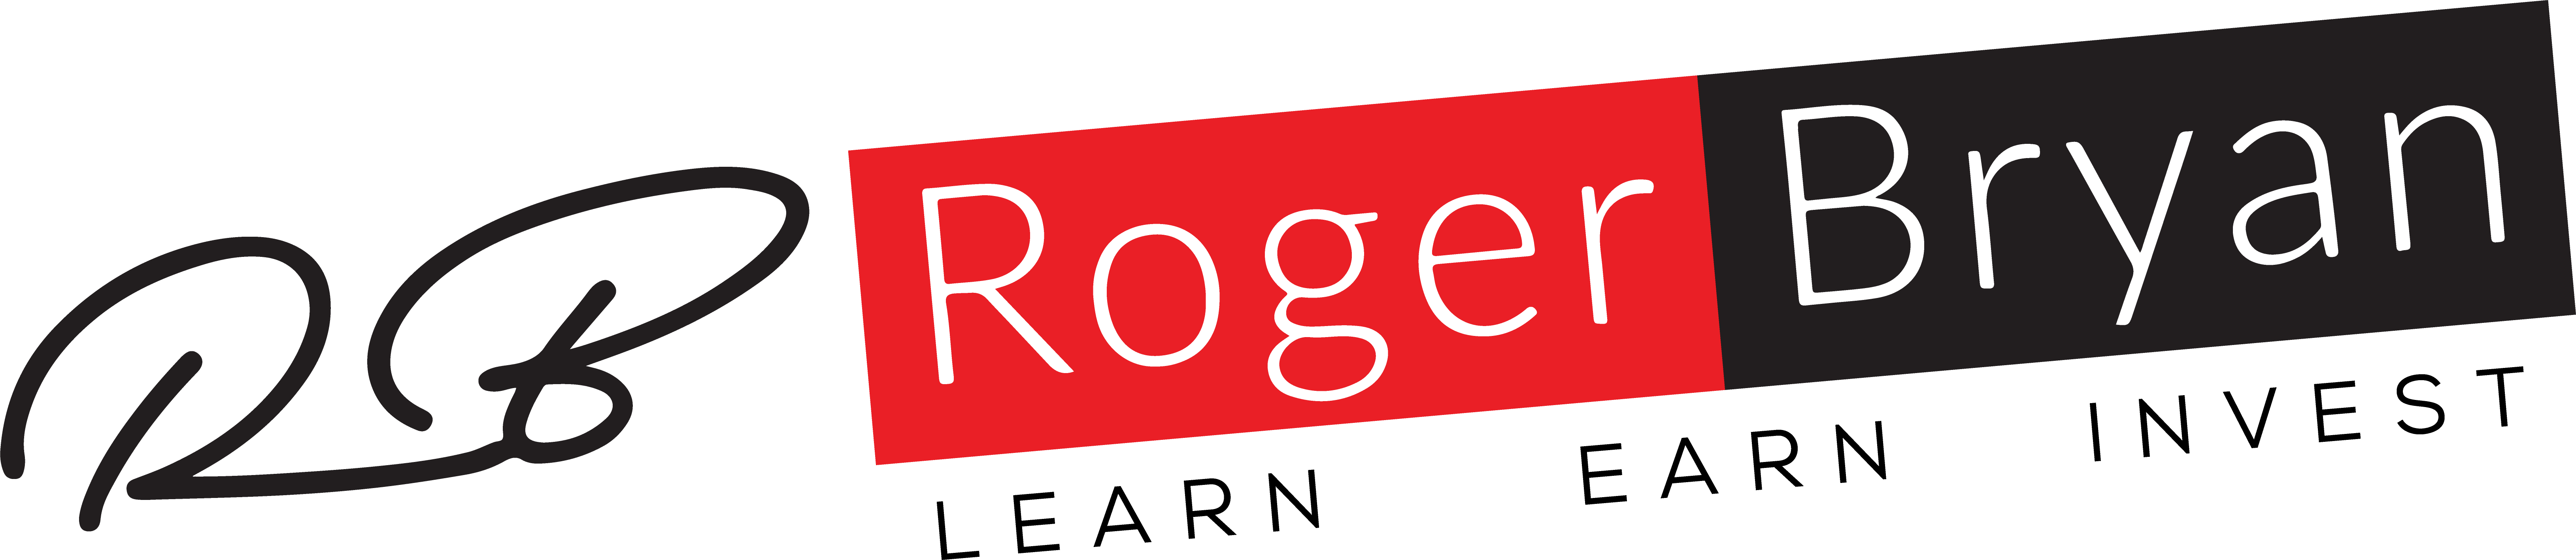 RCBryan Consulting Logo - Roger Bryan Logo